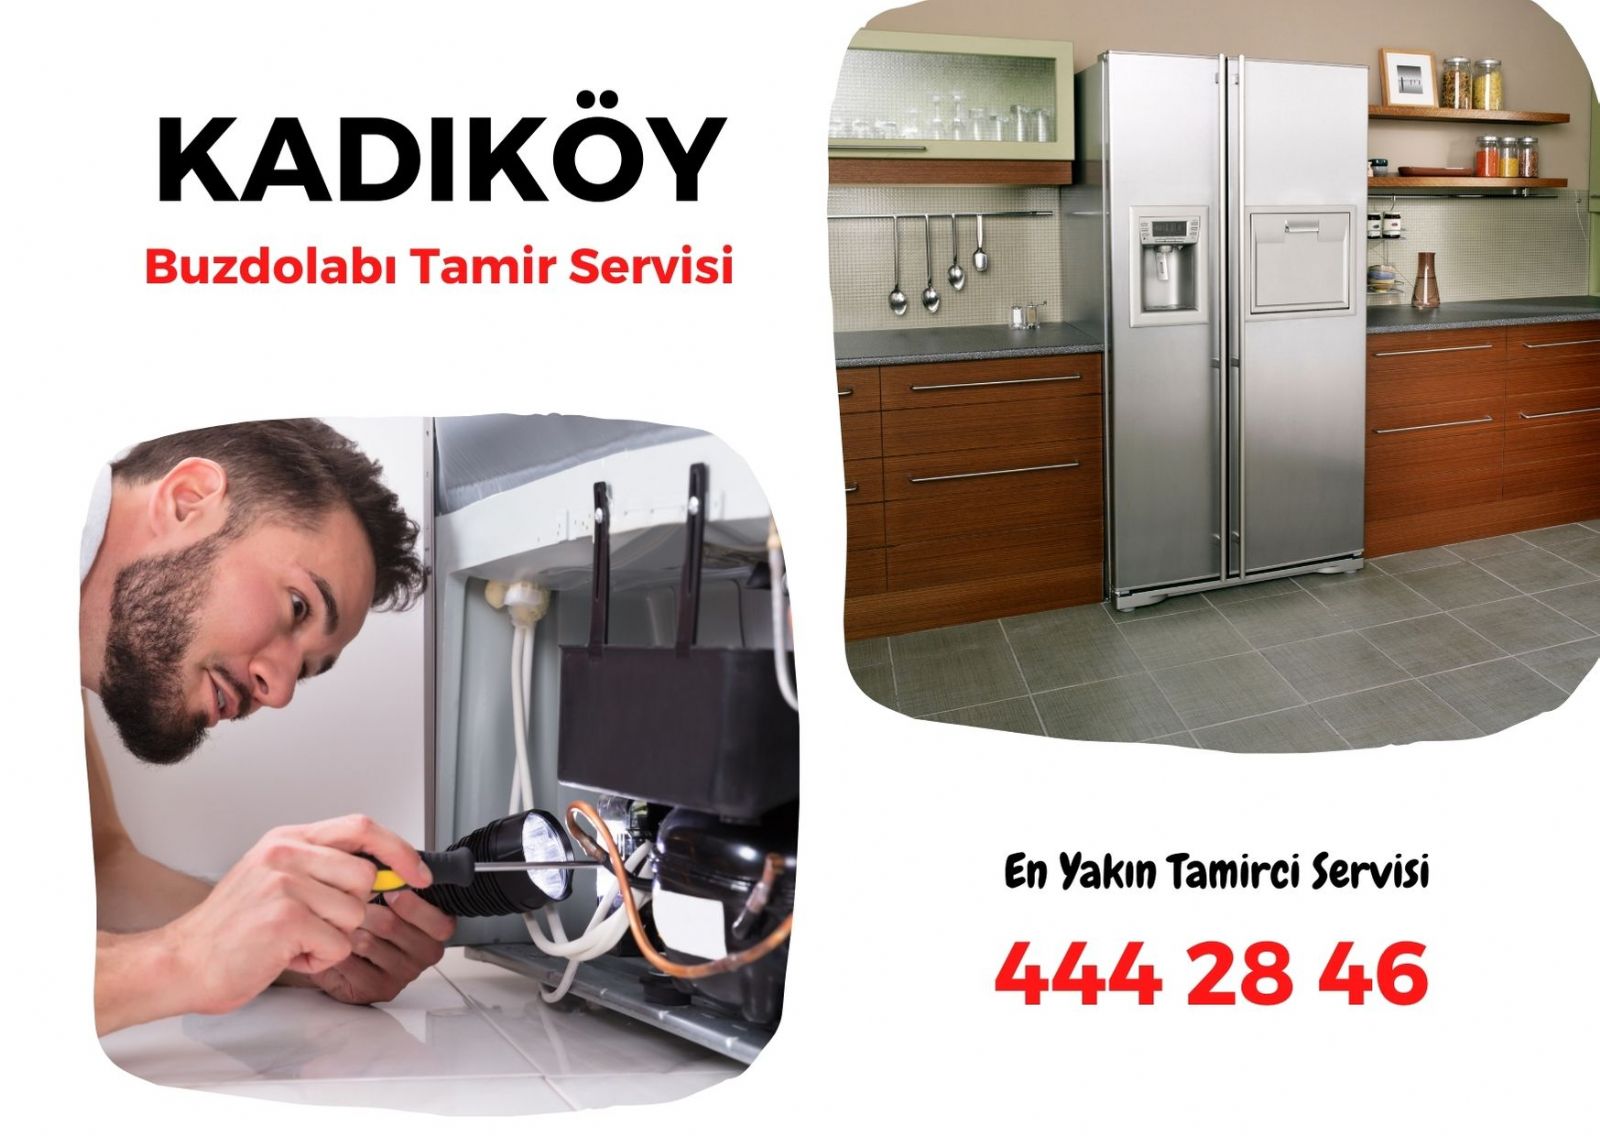 Kadıköy Buzdolabı Tamircisi